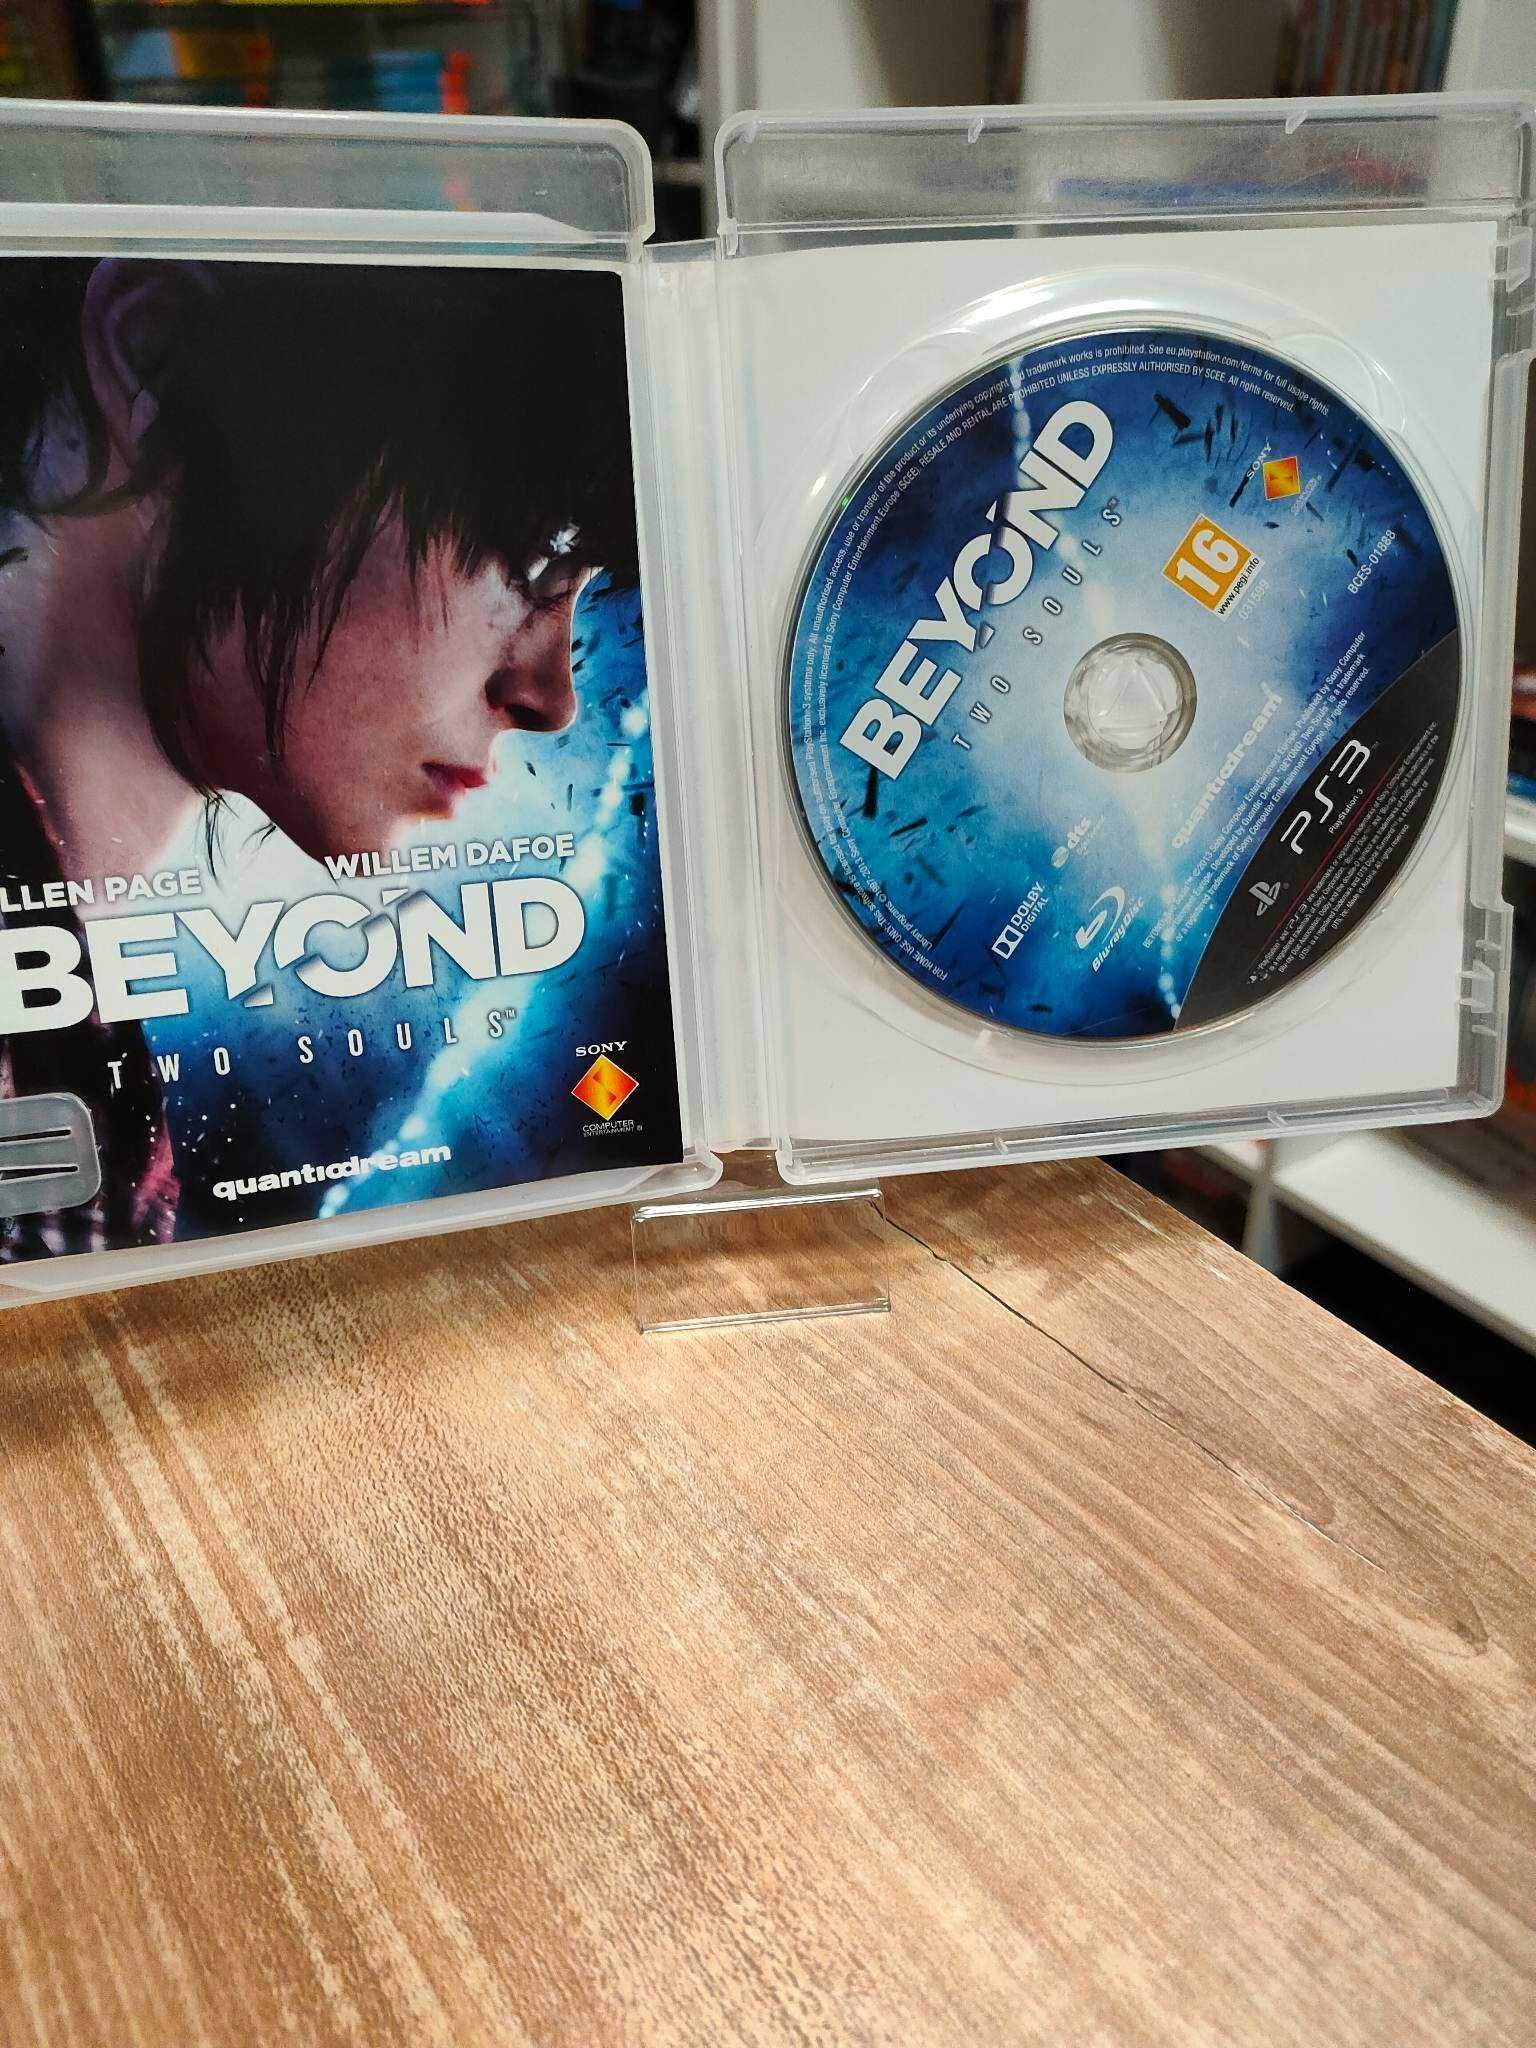 Beyond: Dwie dusze PS3 Sklep Wysyłka Wymiana